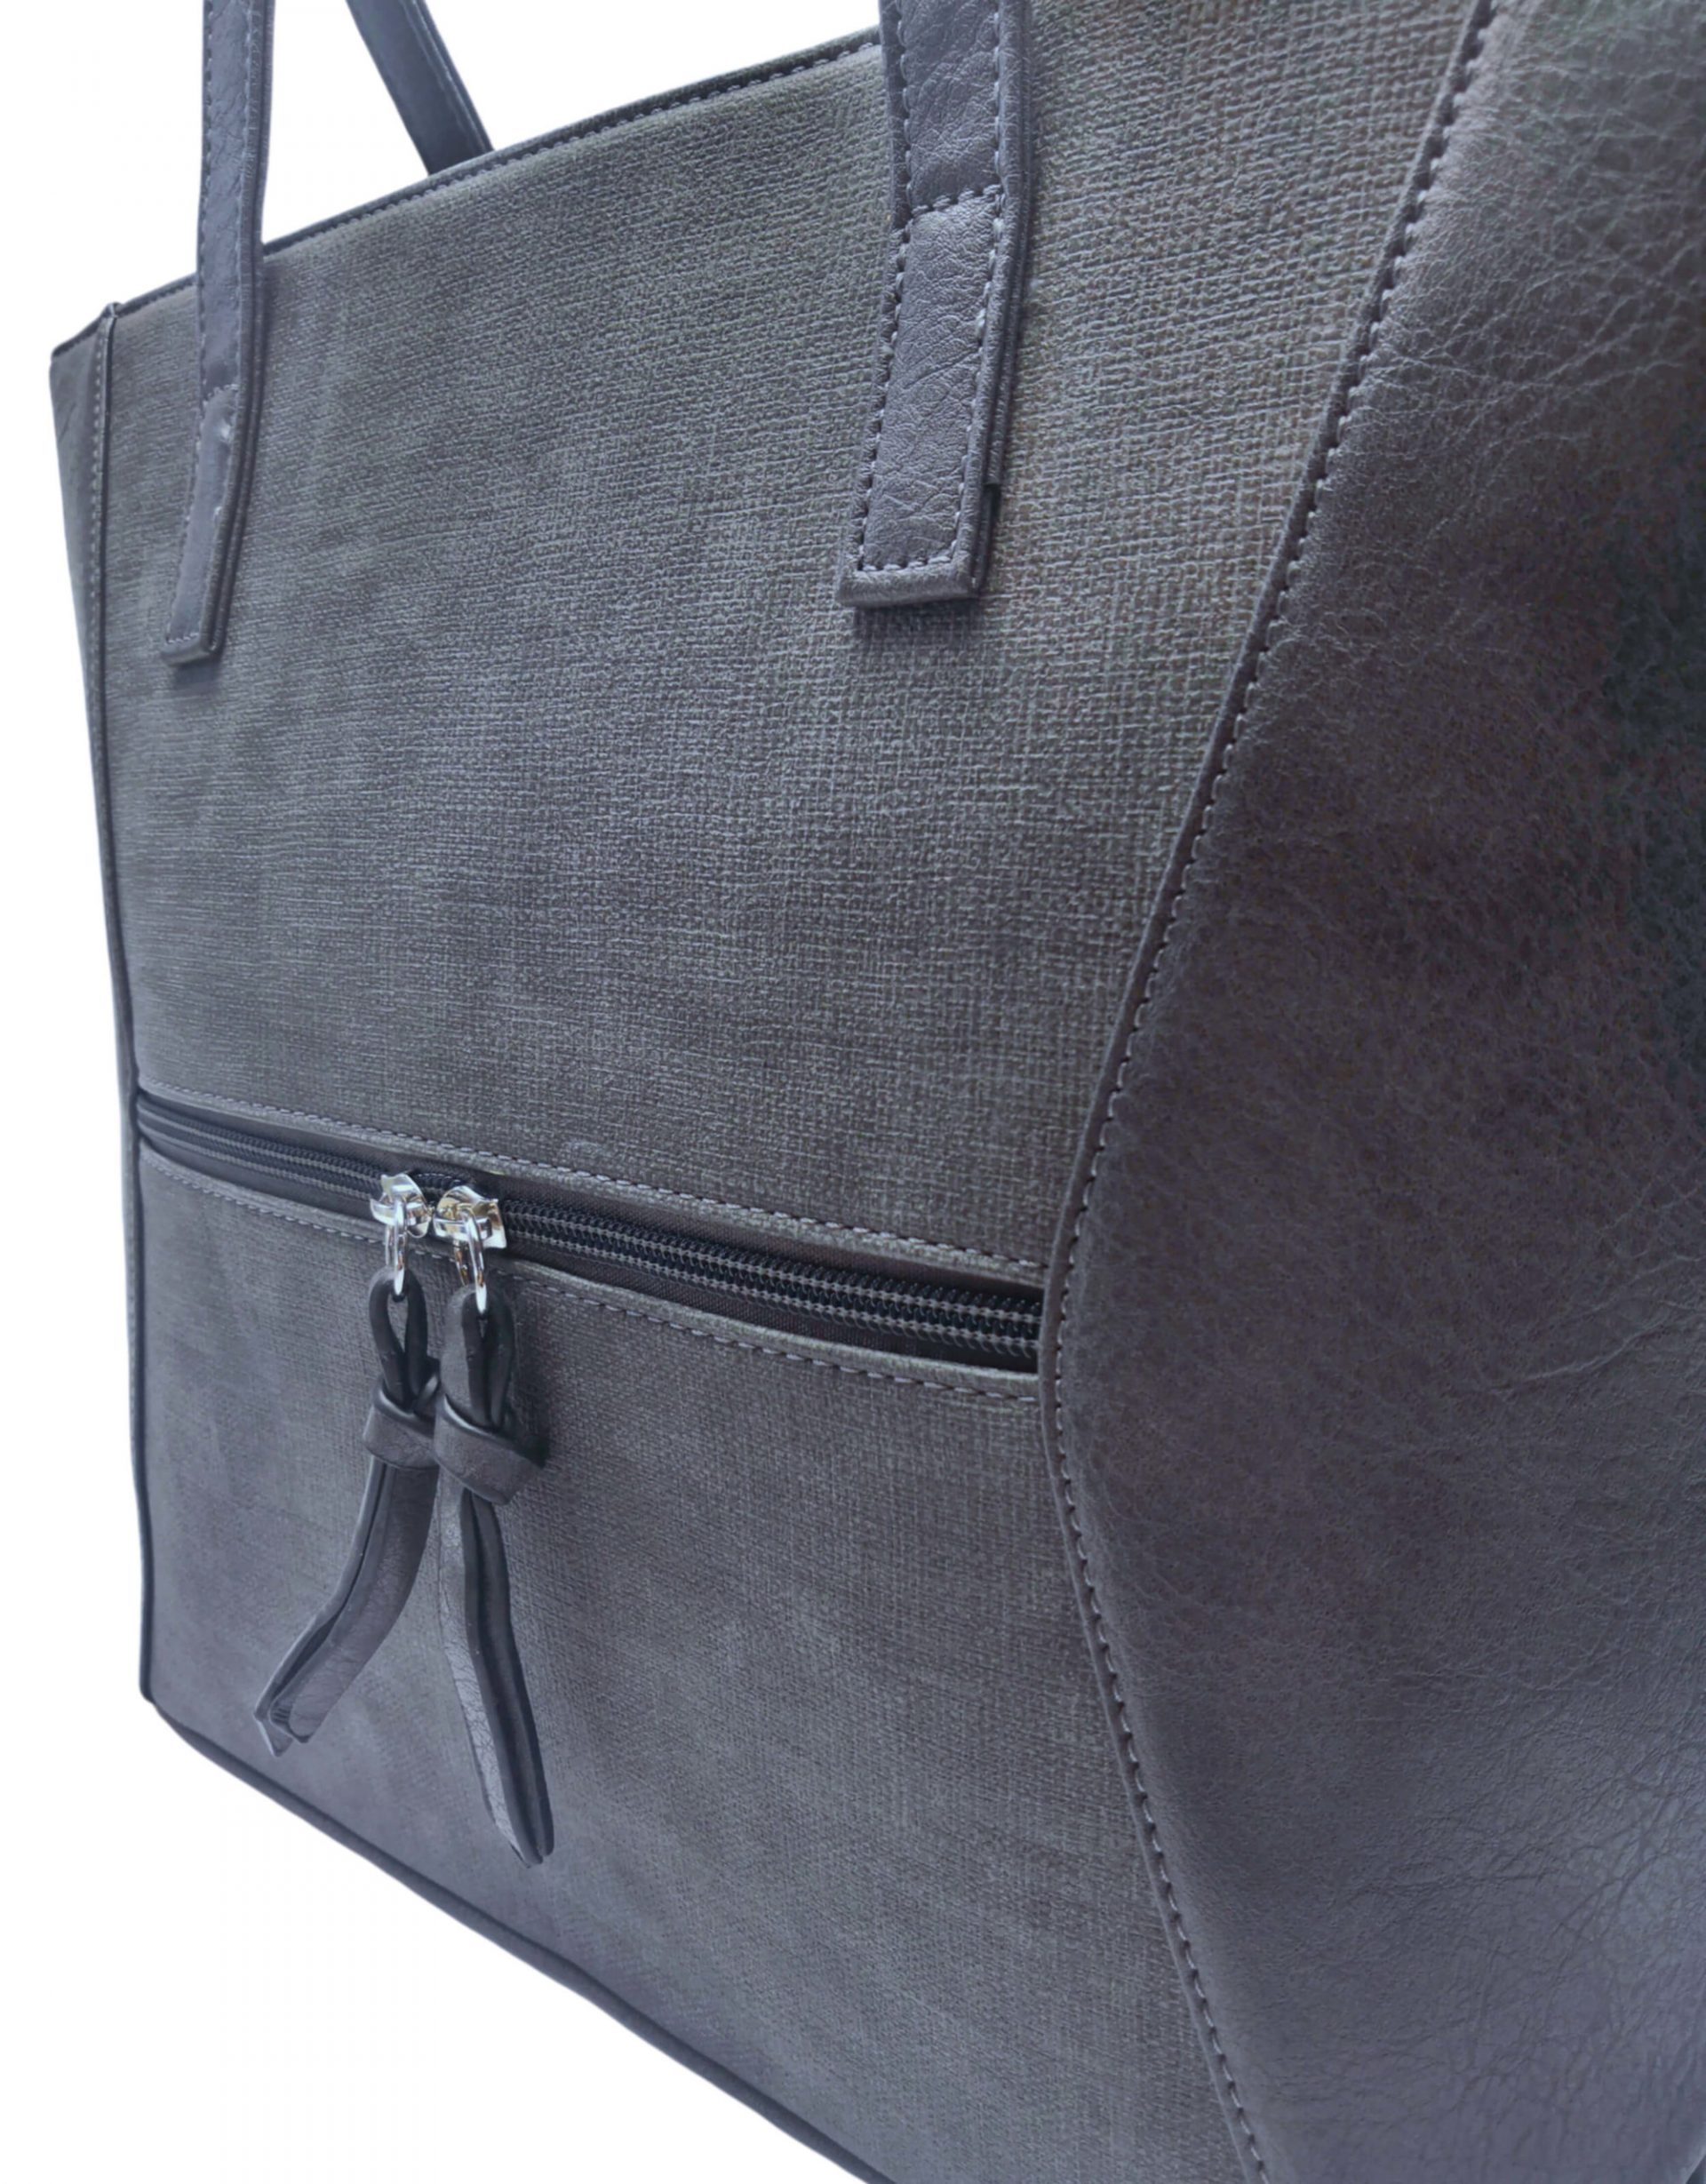 Dámská kabelka přes rameno se slušivým vzorem, Tapple H181178, tmavě šedá, detail kabelky